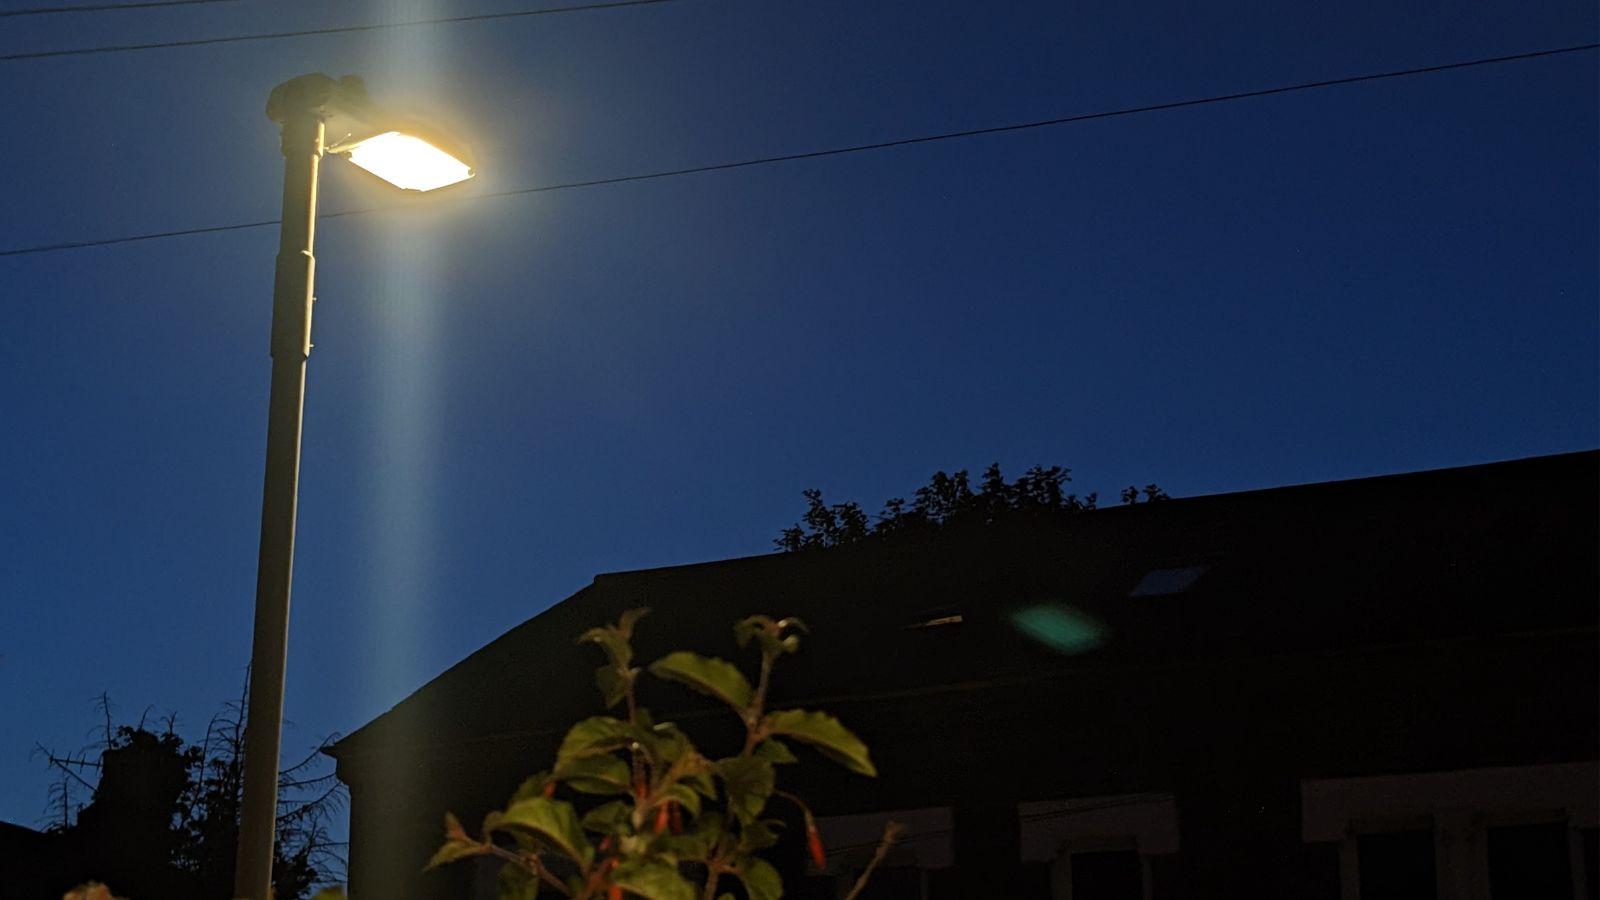 An LED street light shinging on a dark street against a deep blue sky.